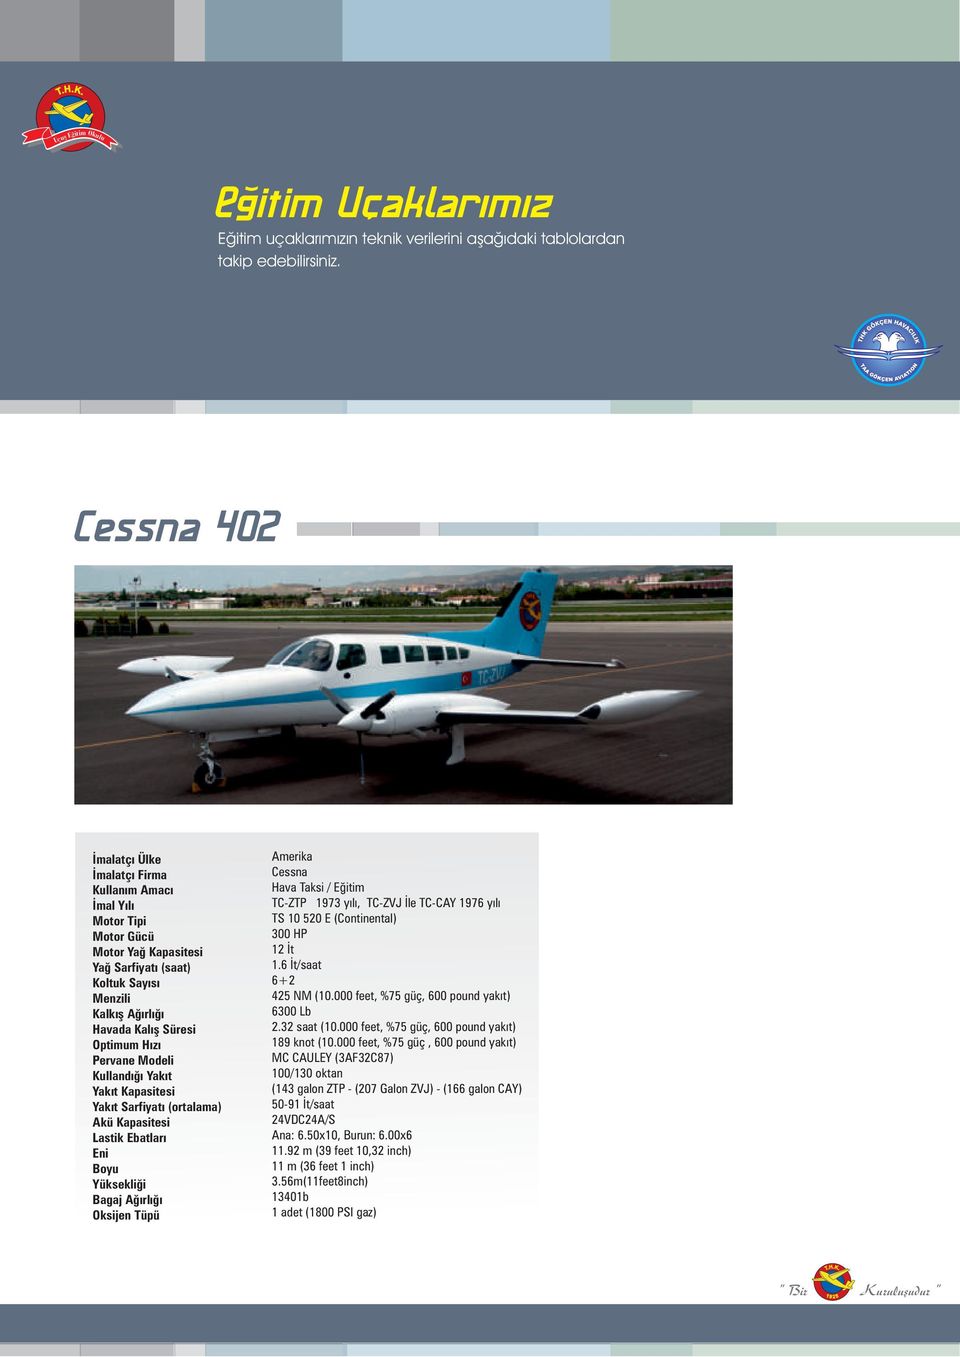 Pervane Modeli Kllandığı Yakıt Yakıt Kapasitesi Yakıt Sarfiyatı (ortalama) Akü Kapasitesi Lastik Ebatları Eni Boy Yüksekliği Bagaj Ağırlığı Oksijen Tüpü Amerika Cessna Hava Taksi / Eğitim TC-ZTP 1973